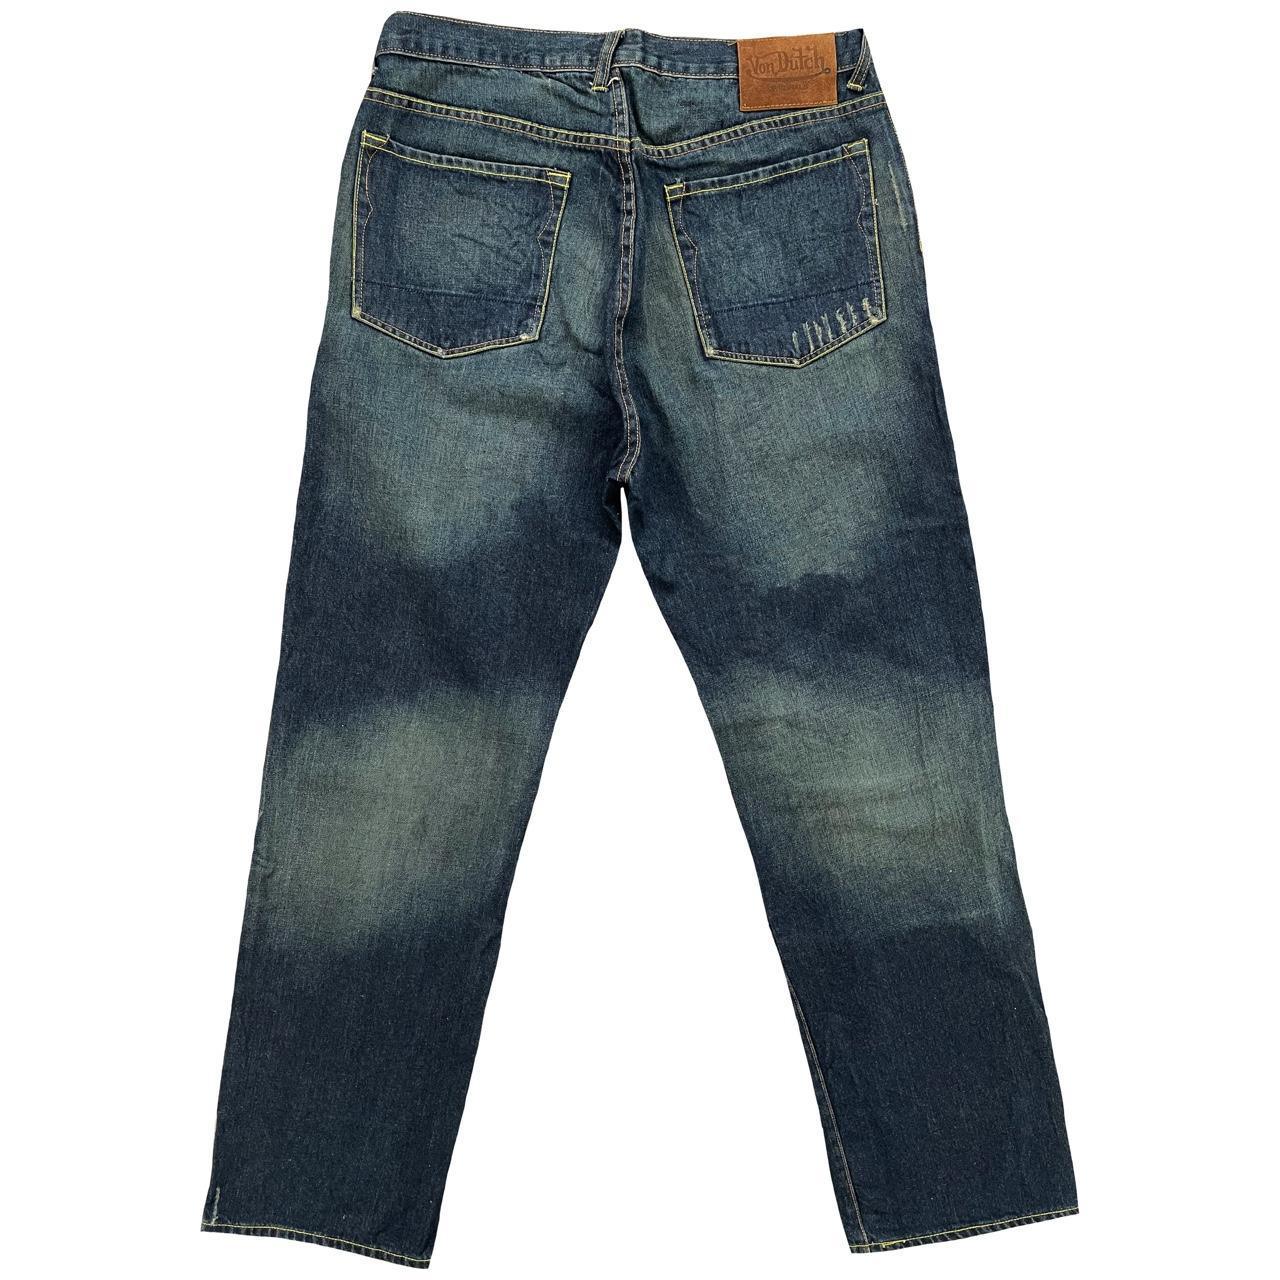 Von Dutch Patchwork Jeans - Known Source